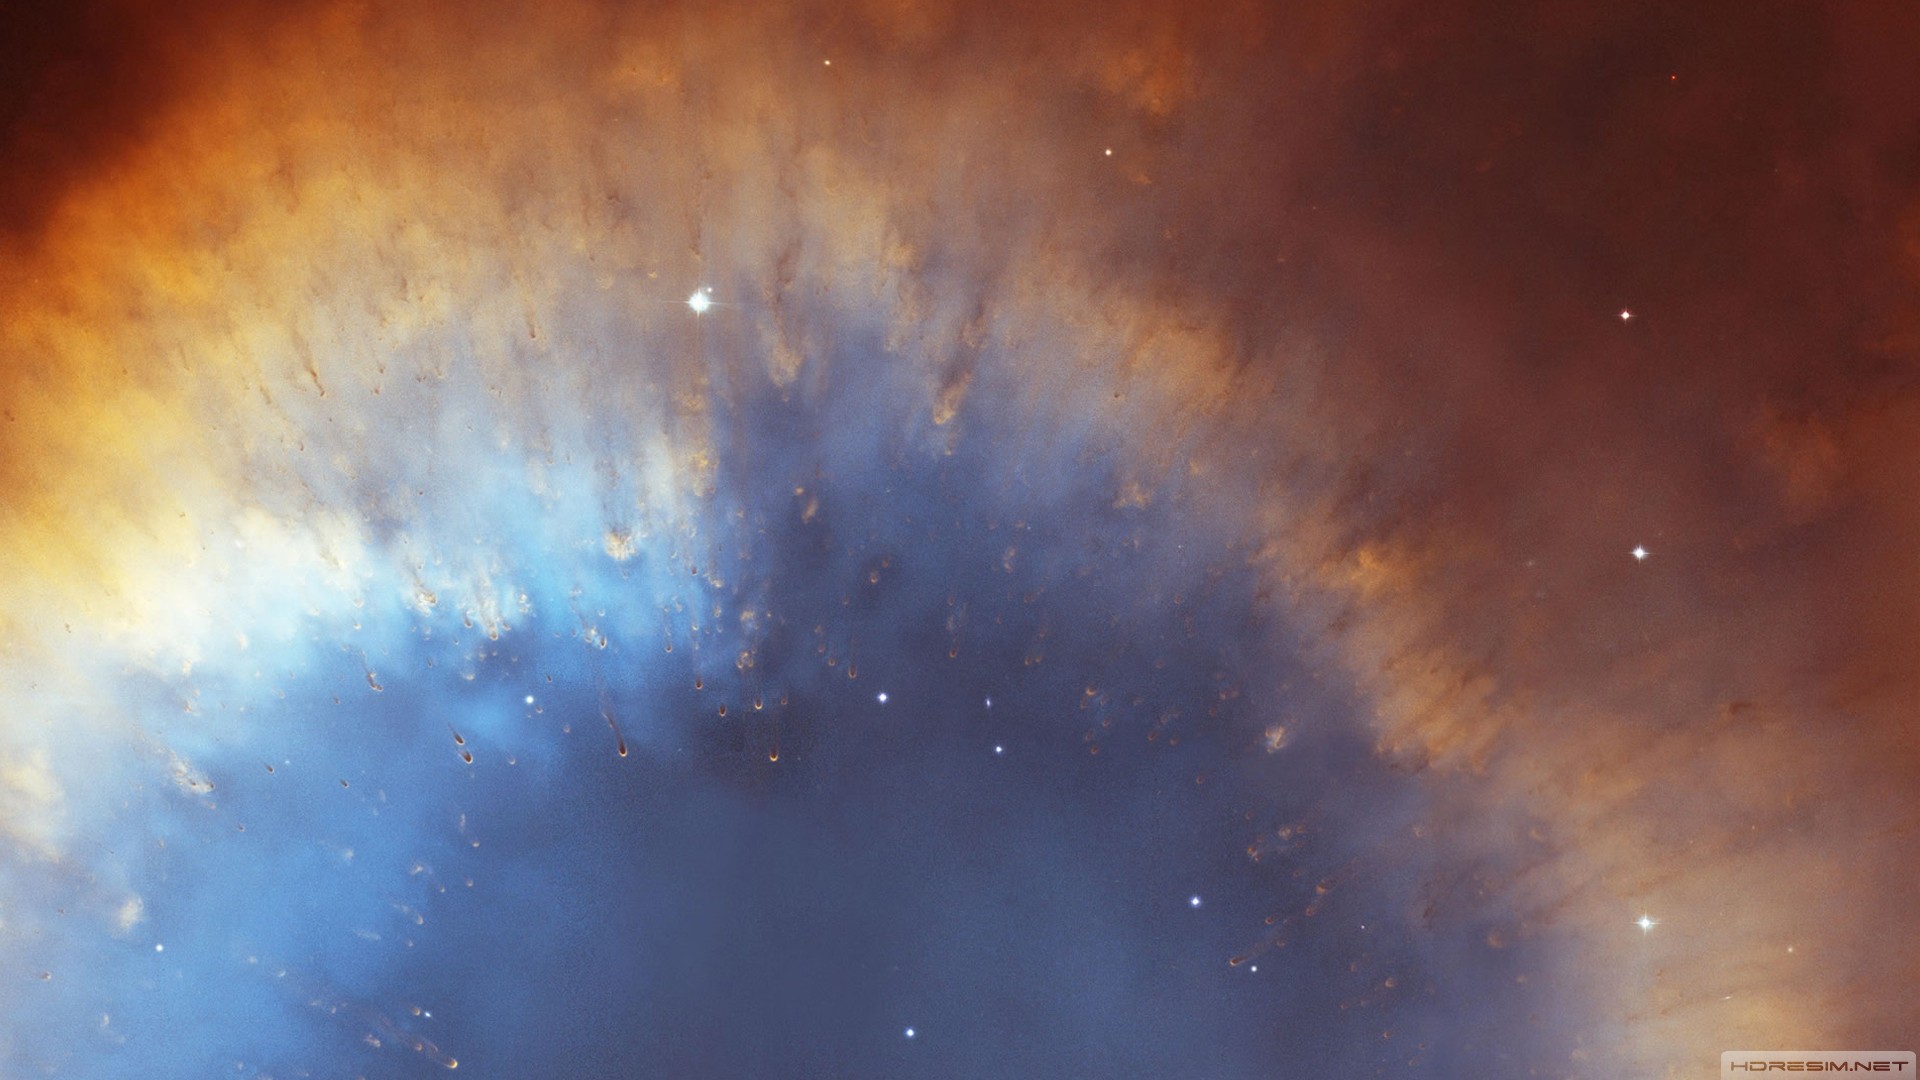 gaz bulutu,nebula,uzay,yıldız